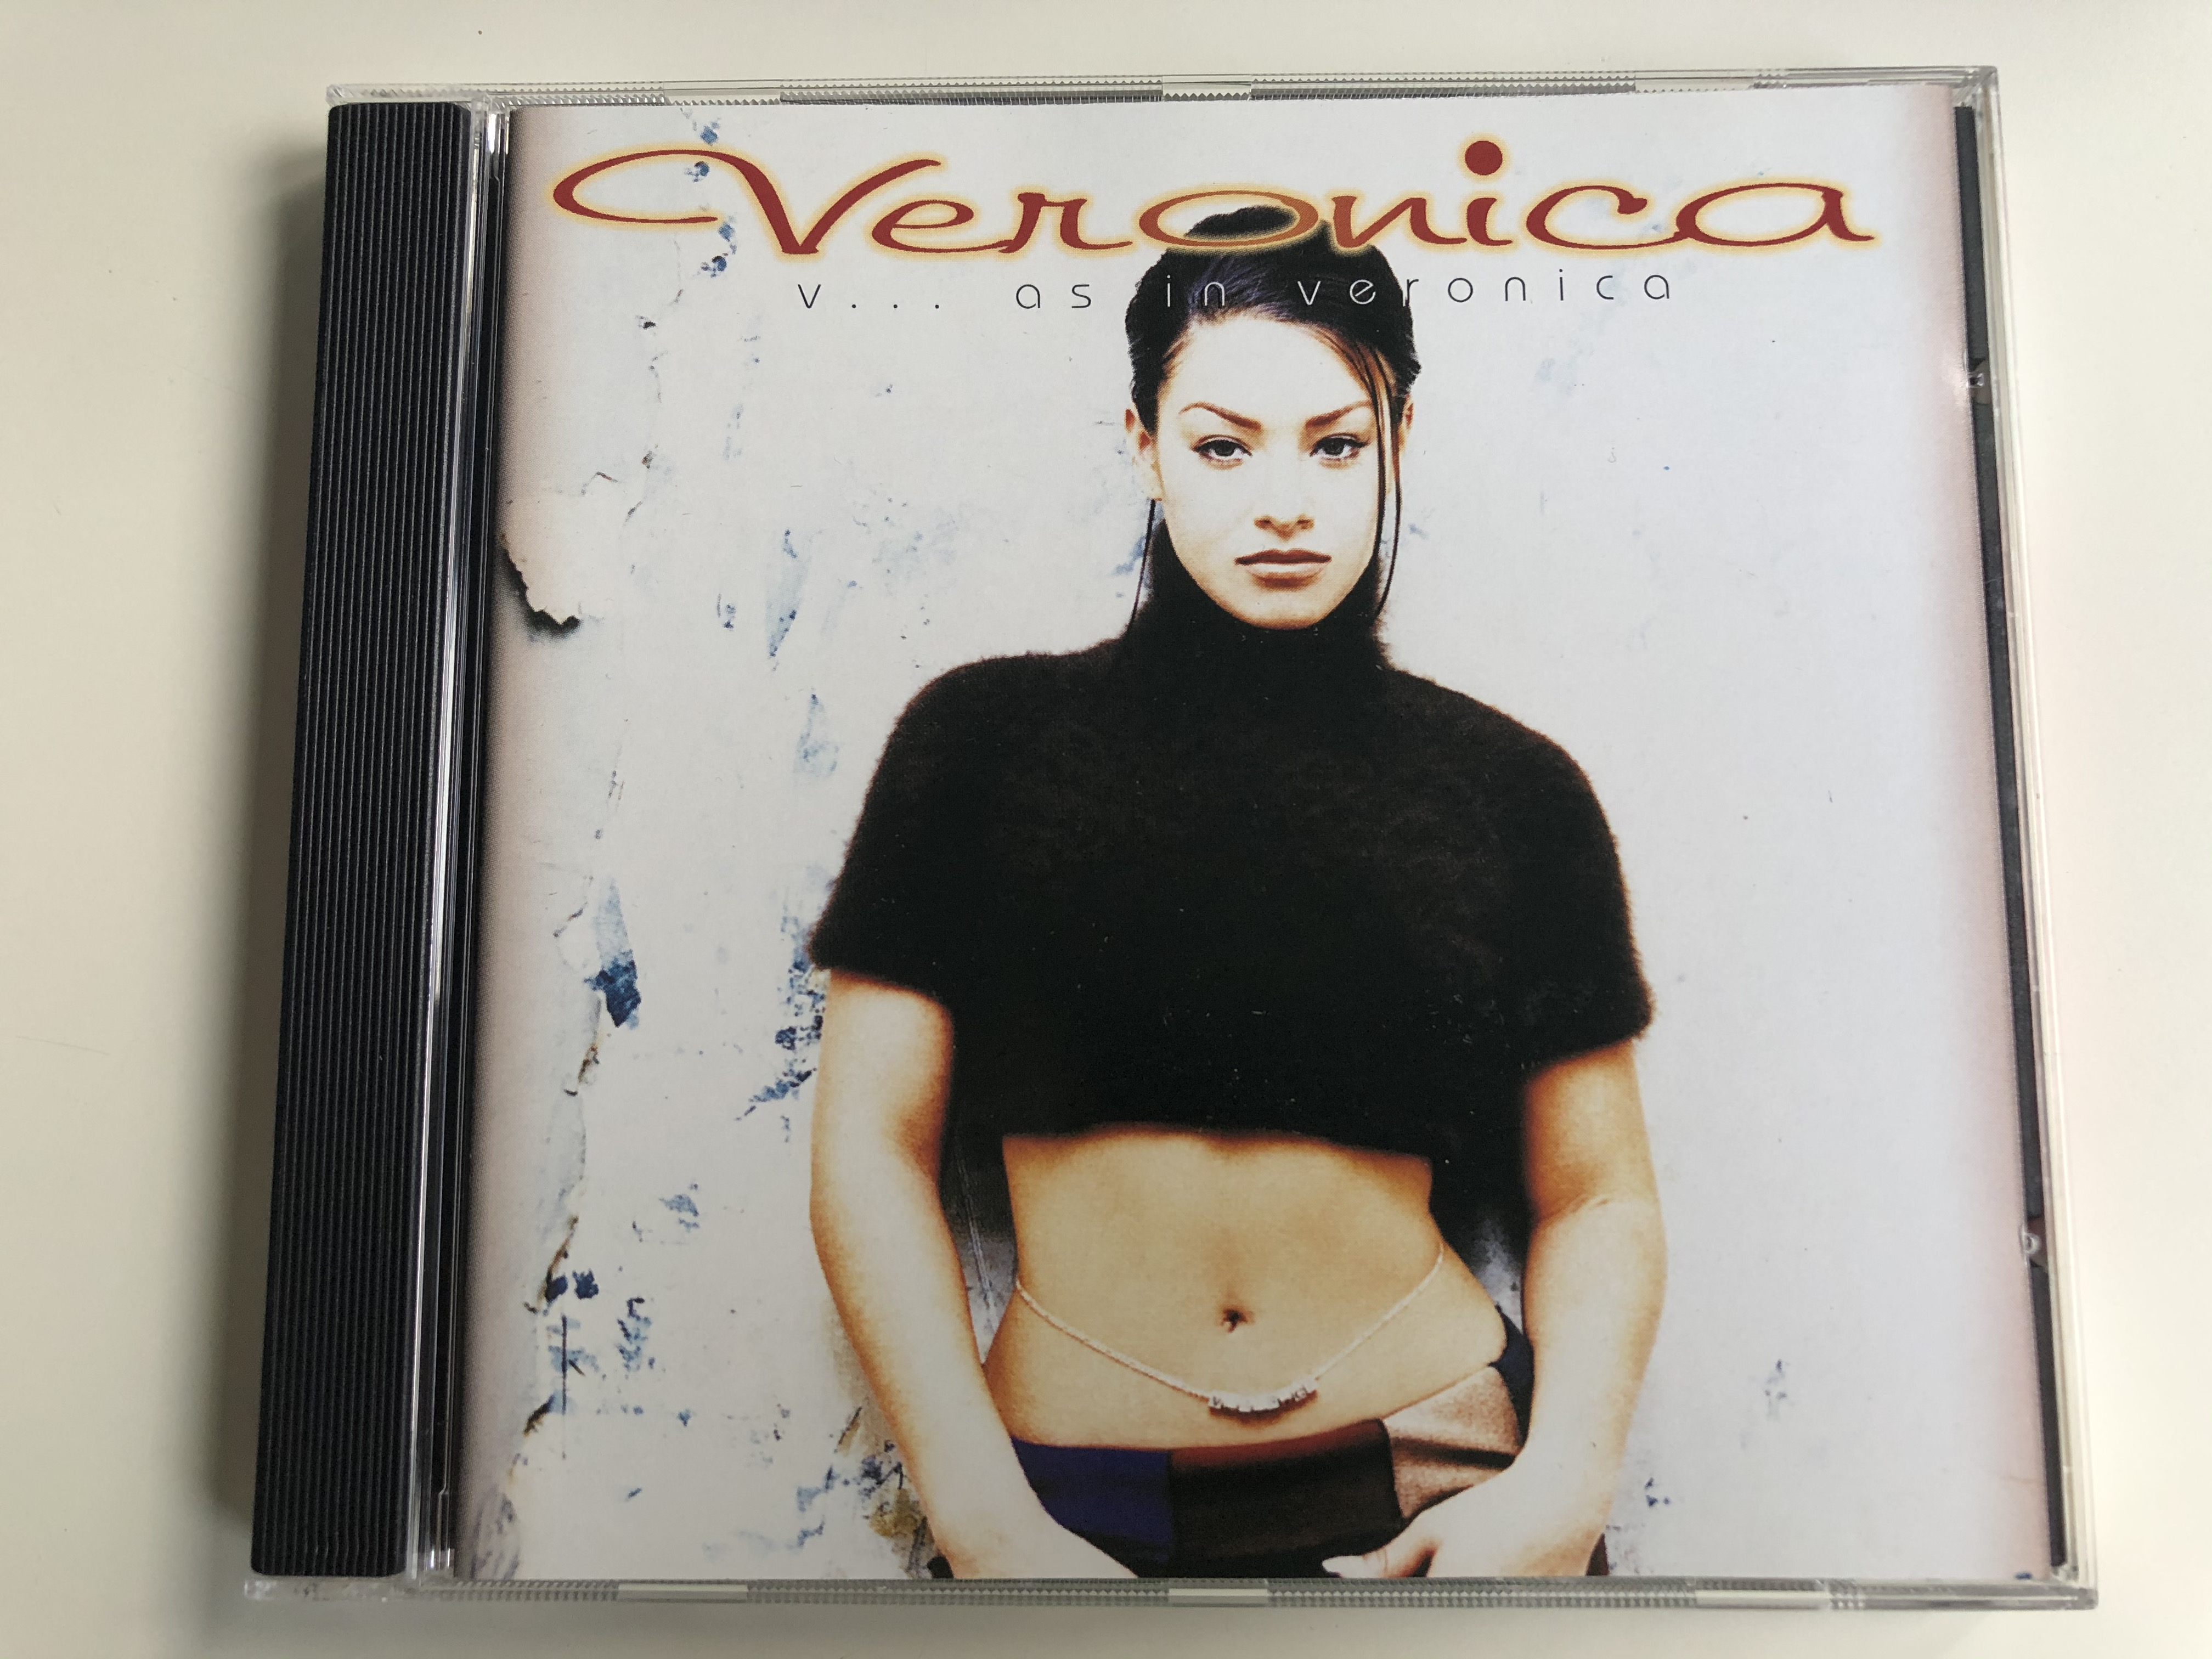 veronica-v...-as-in-veronica-mercury-audio-cd-1995-528-548-2-1-.jpg